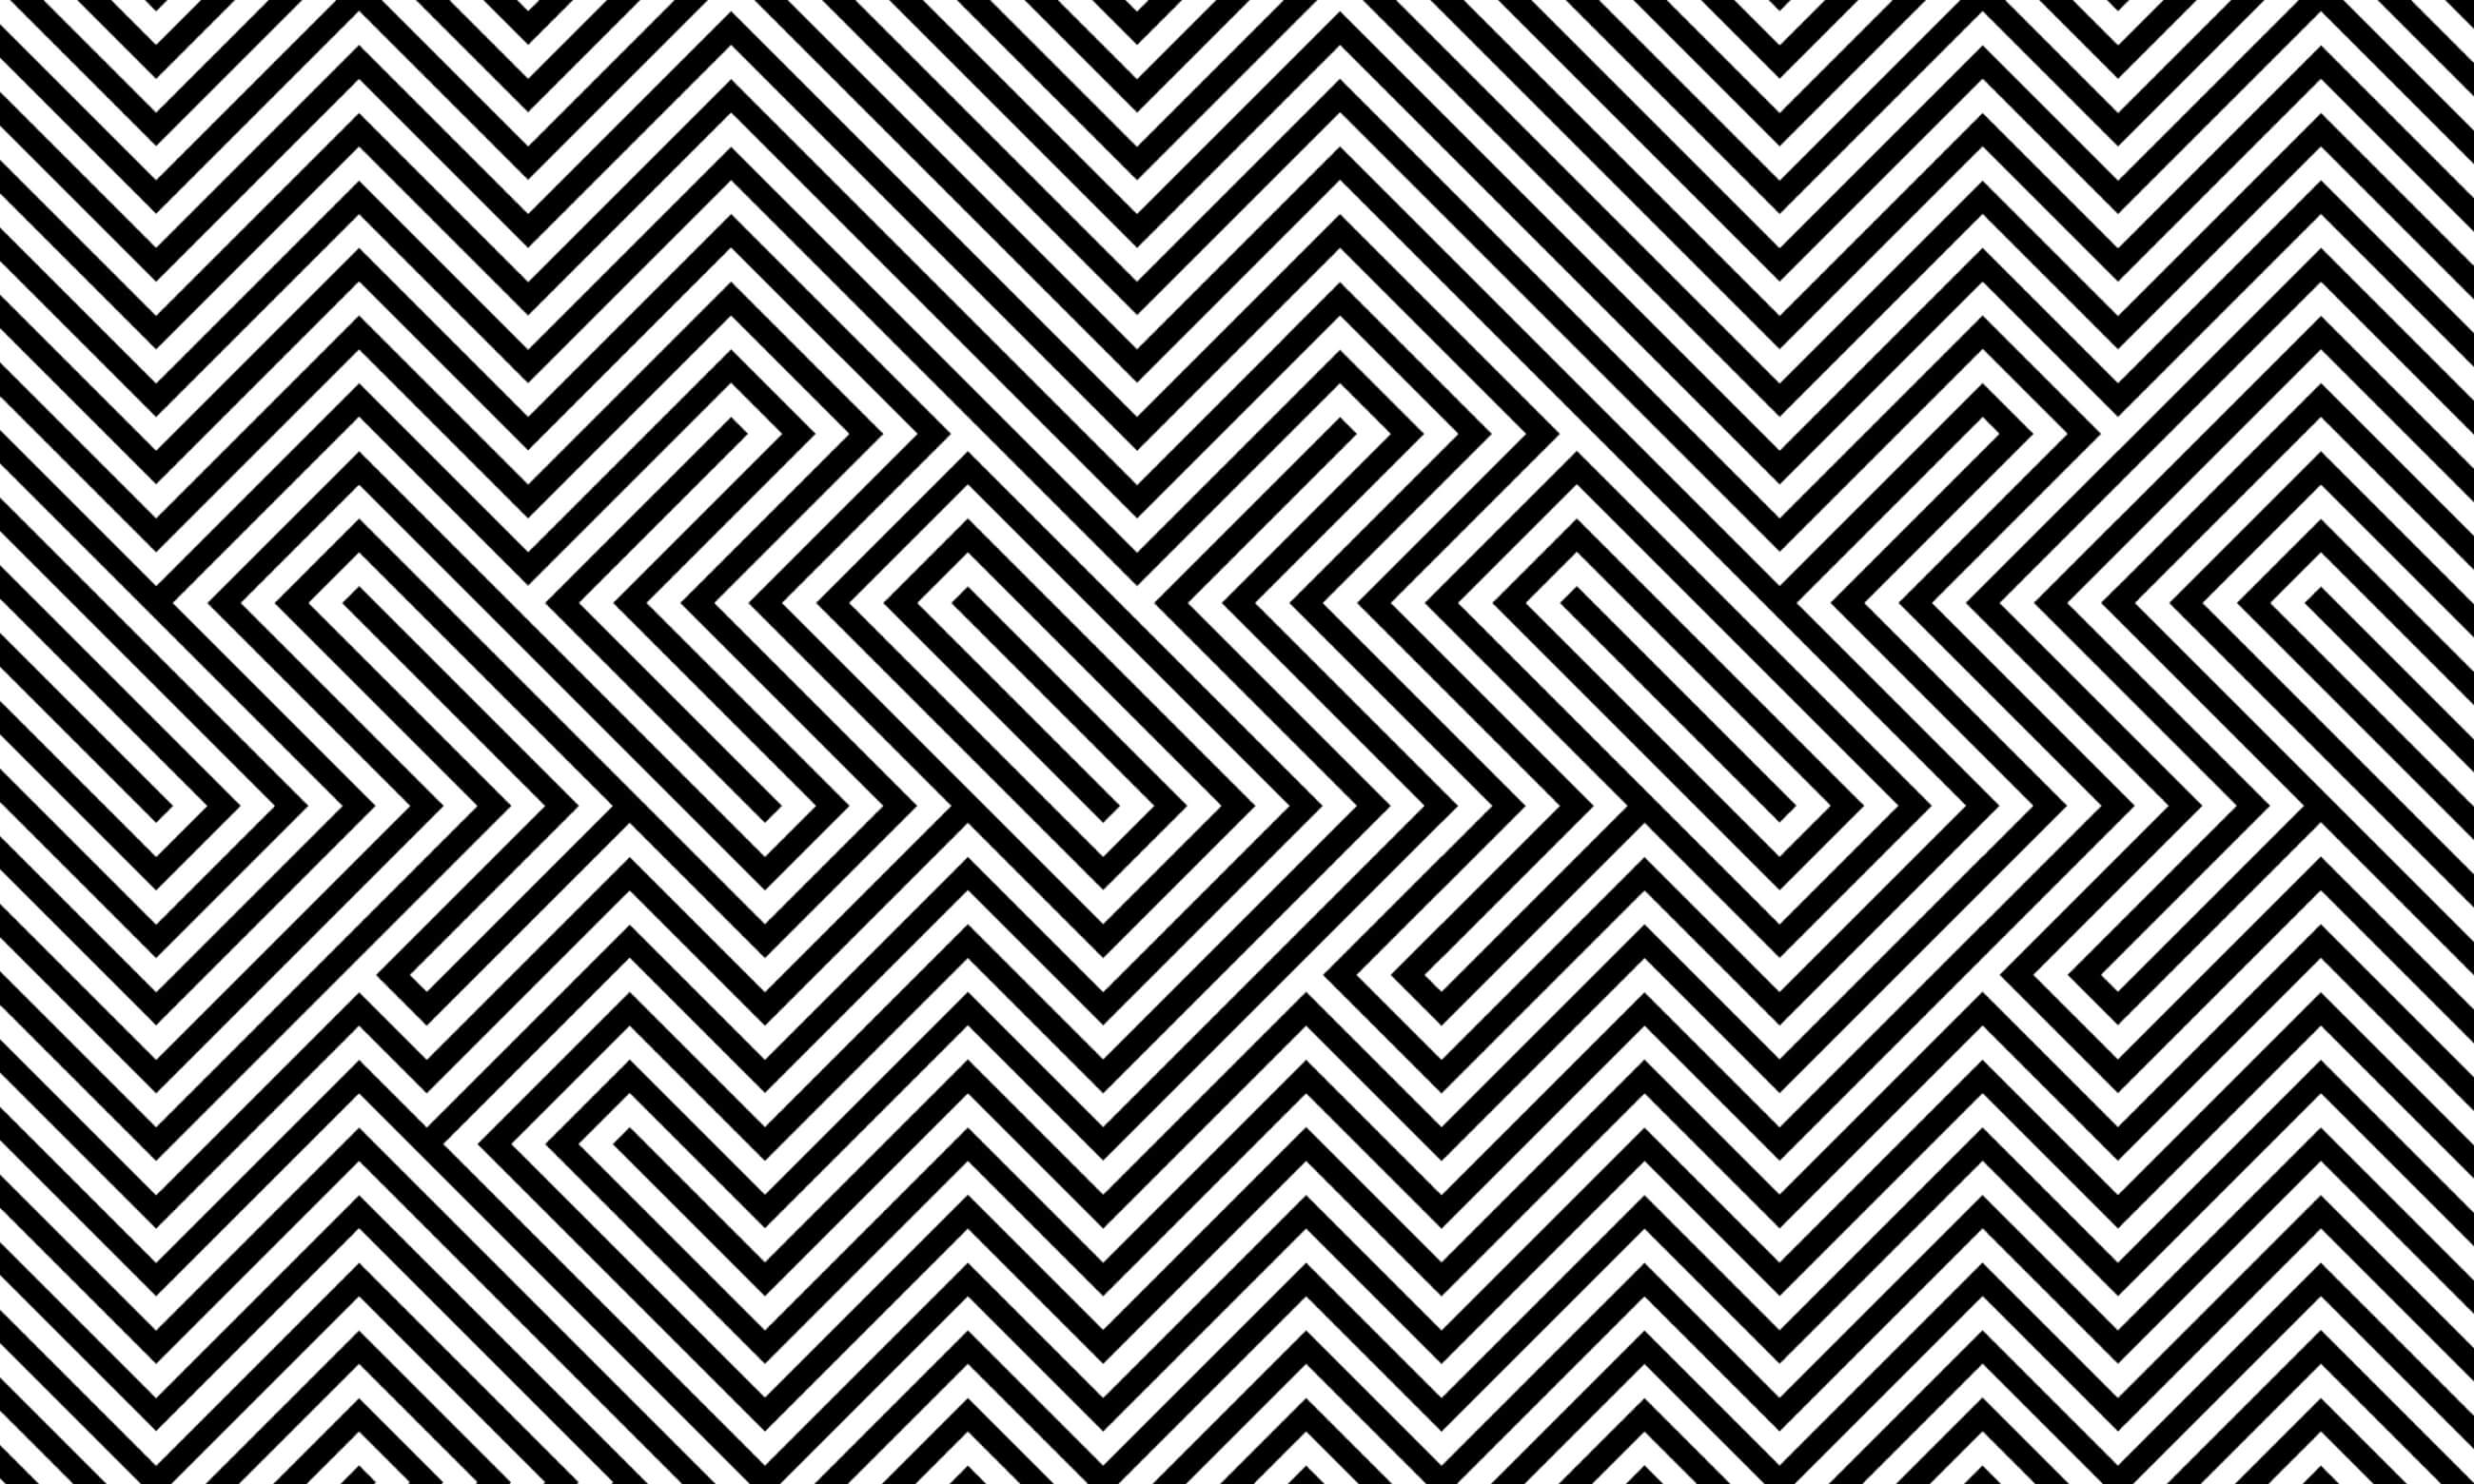 gander-thing-of-wonder-illusion-pattern@2x